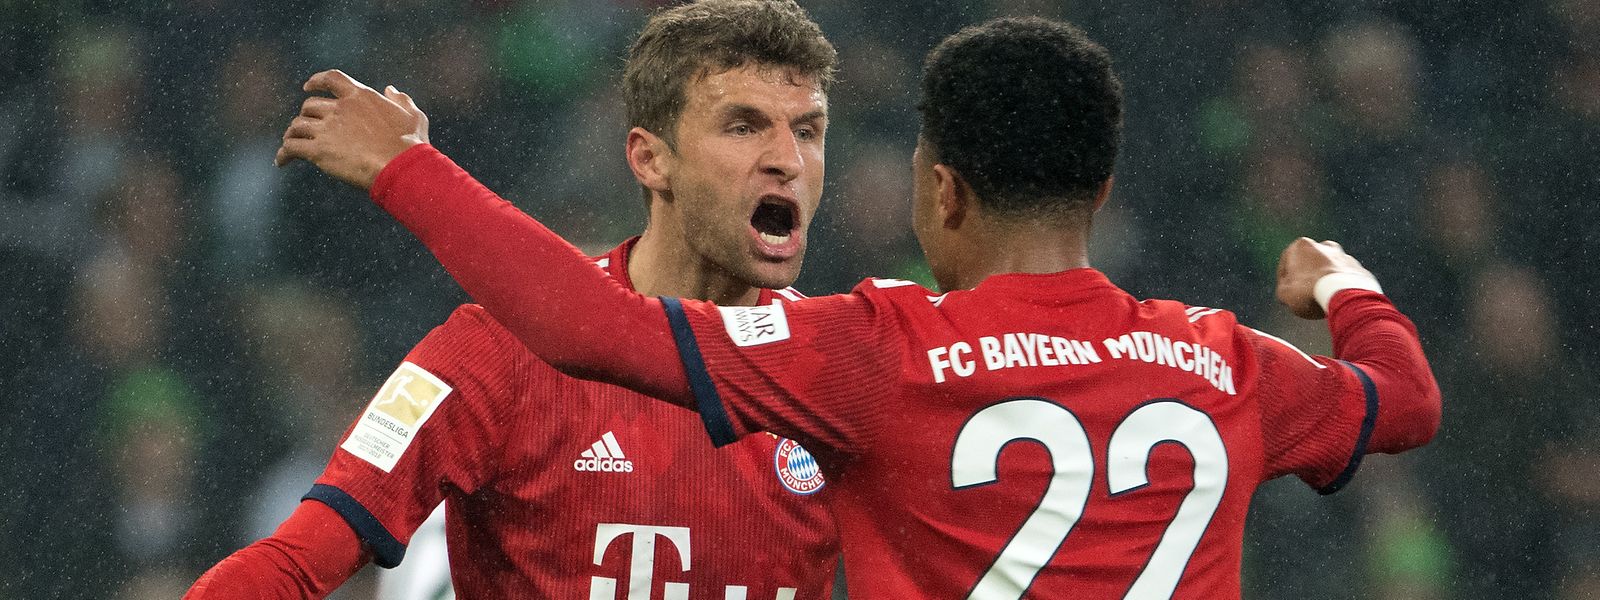 Thomas Müller wird nicht mehr für die Auswahl des DFB auflaufen.